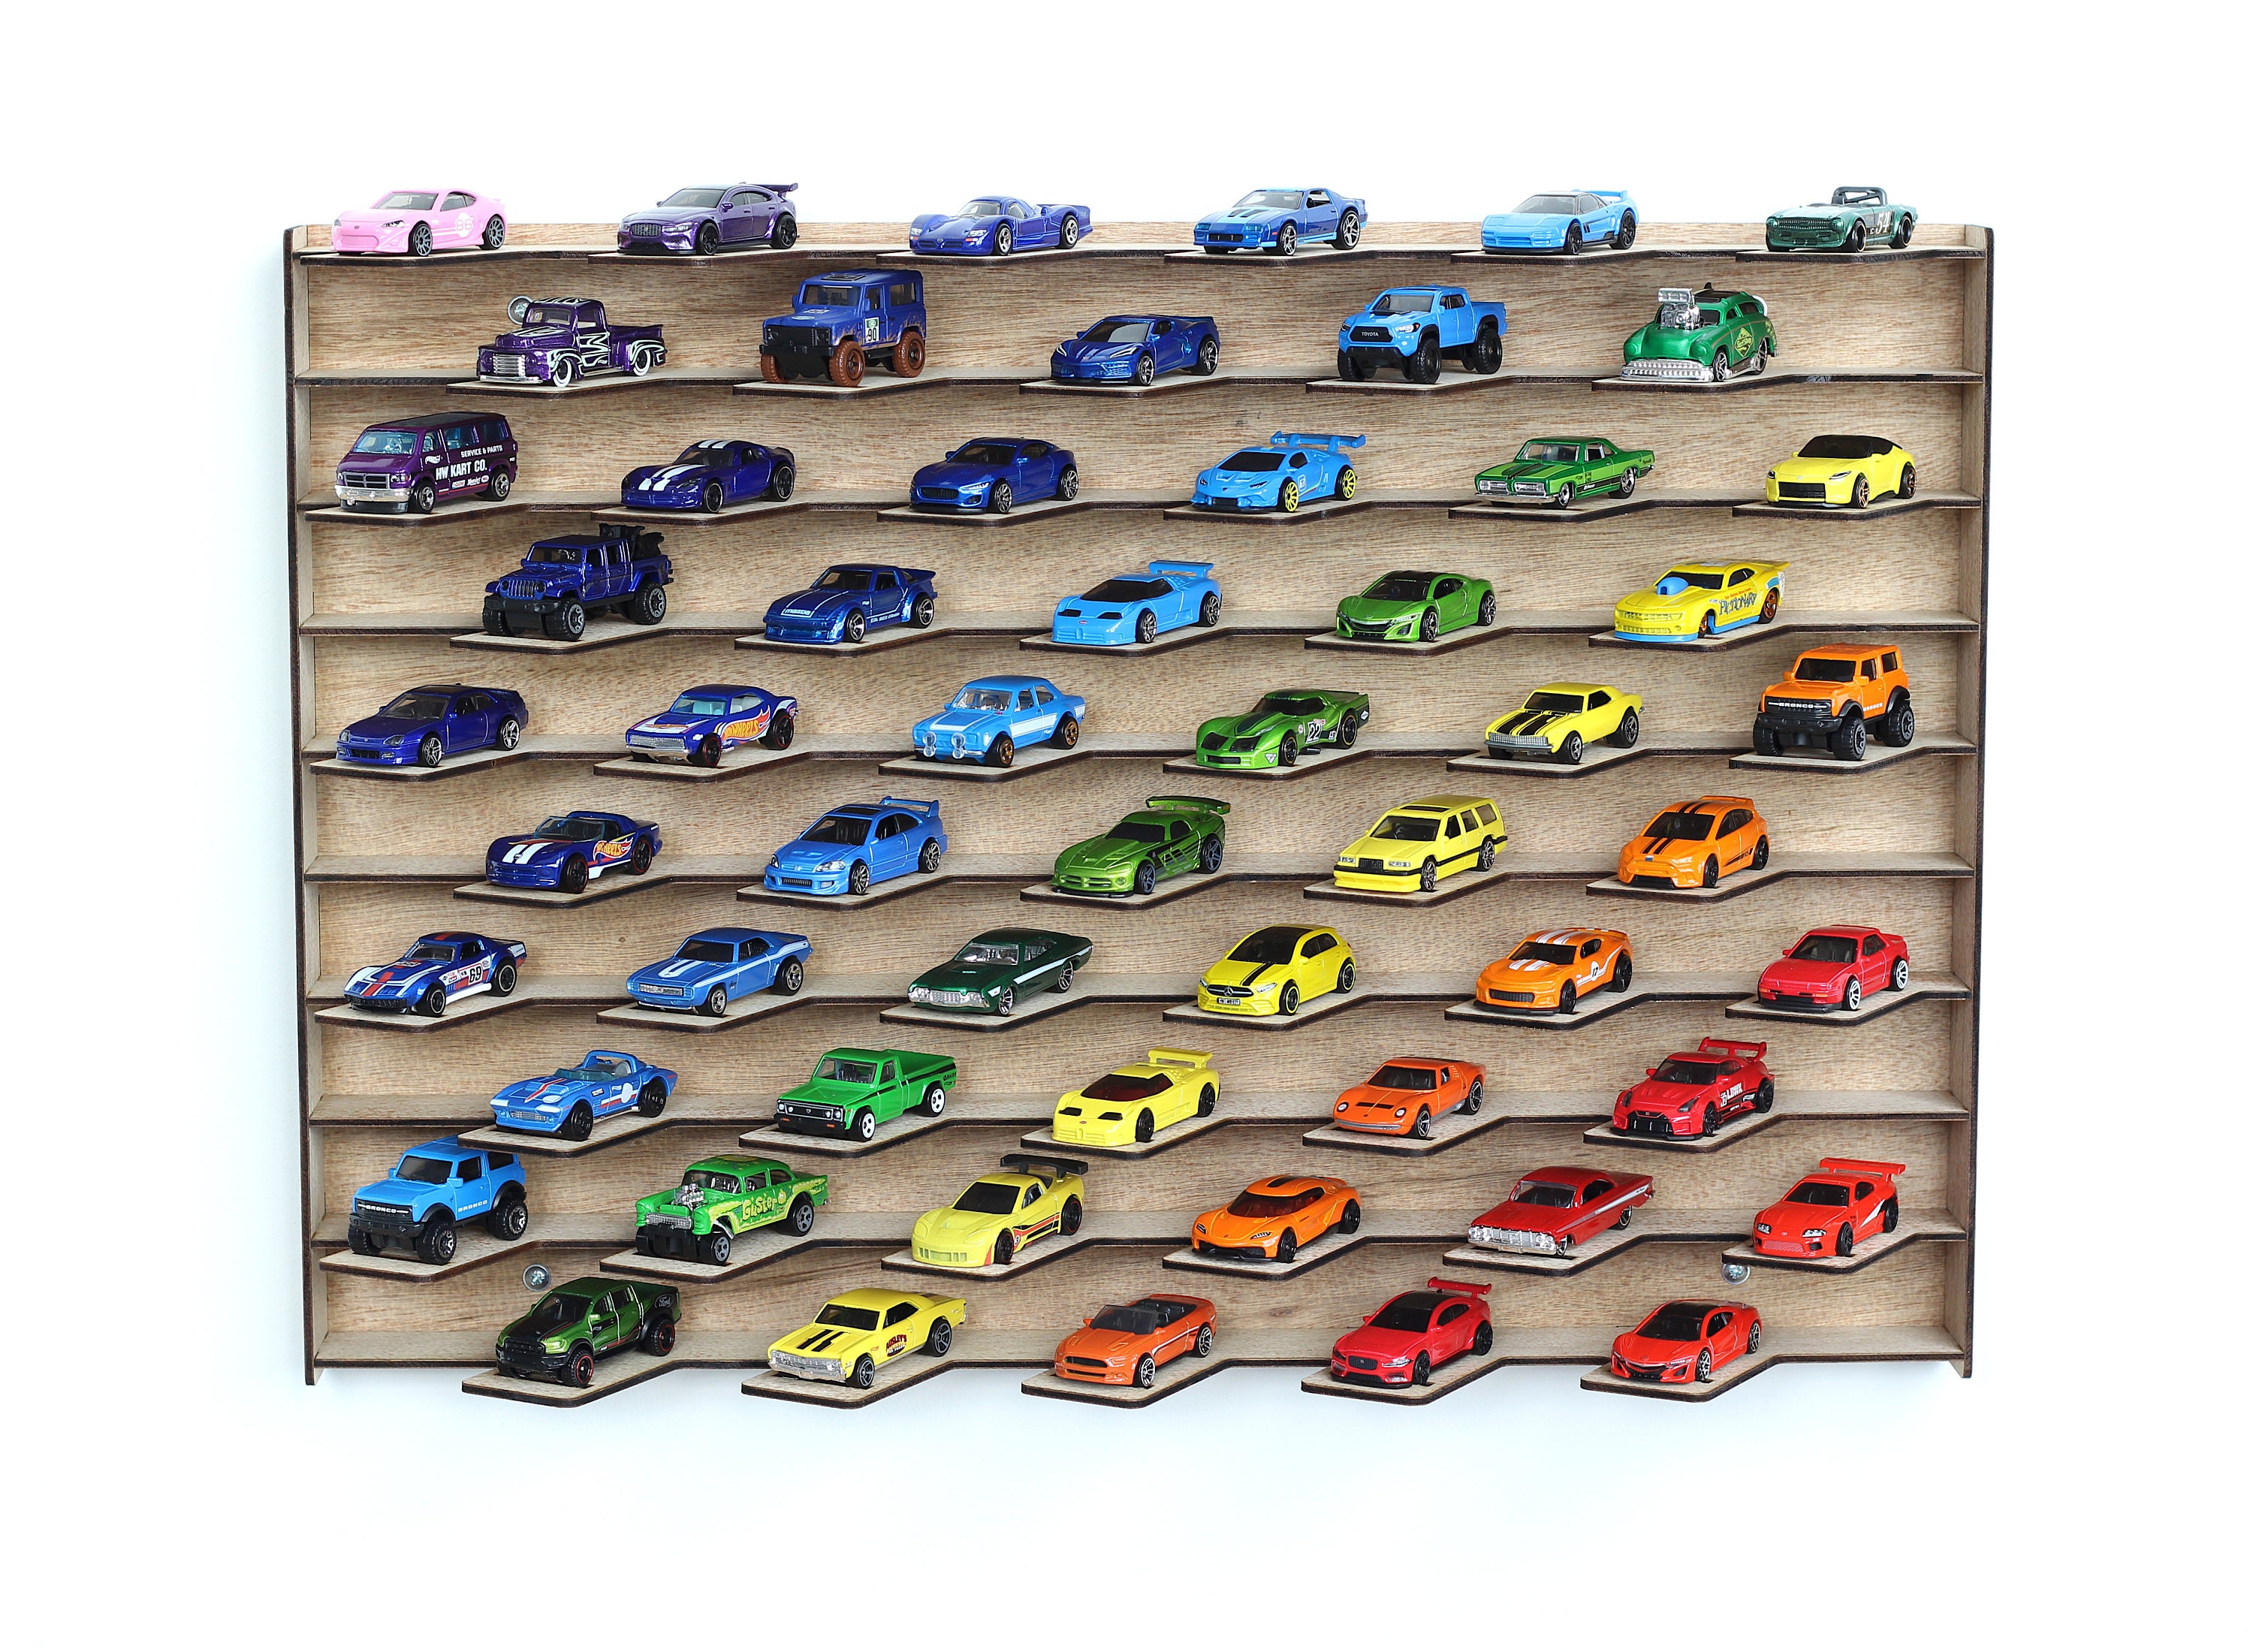 Expositor para Hot Wheels, almacena 55 coches de juguete. -  España